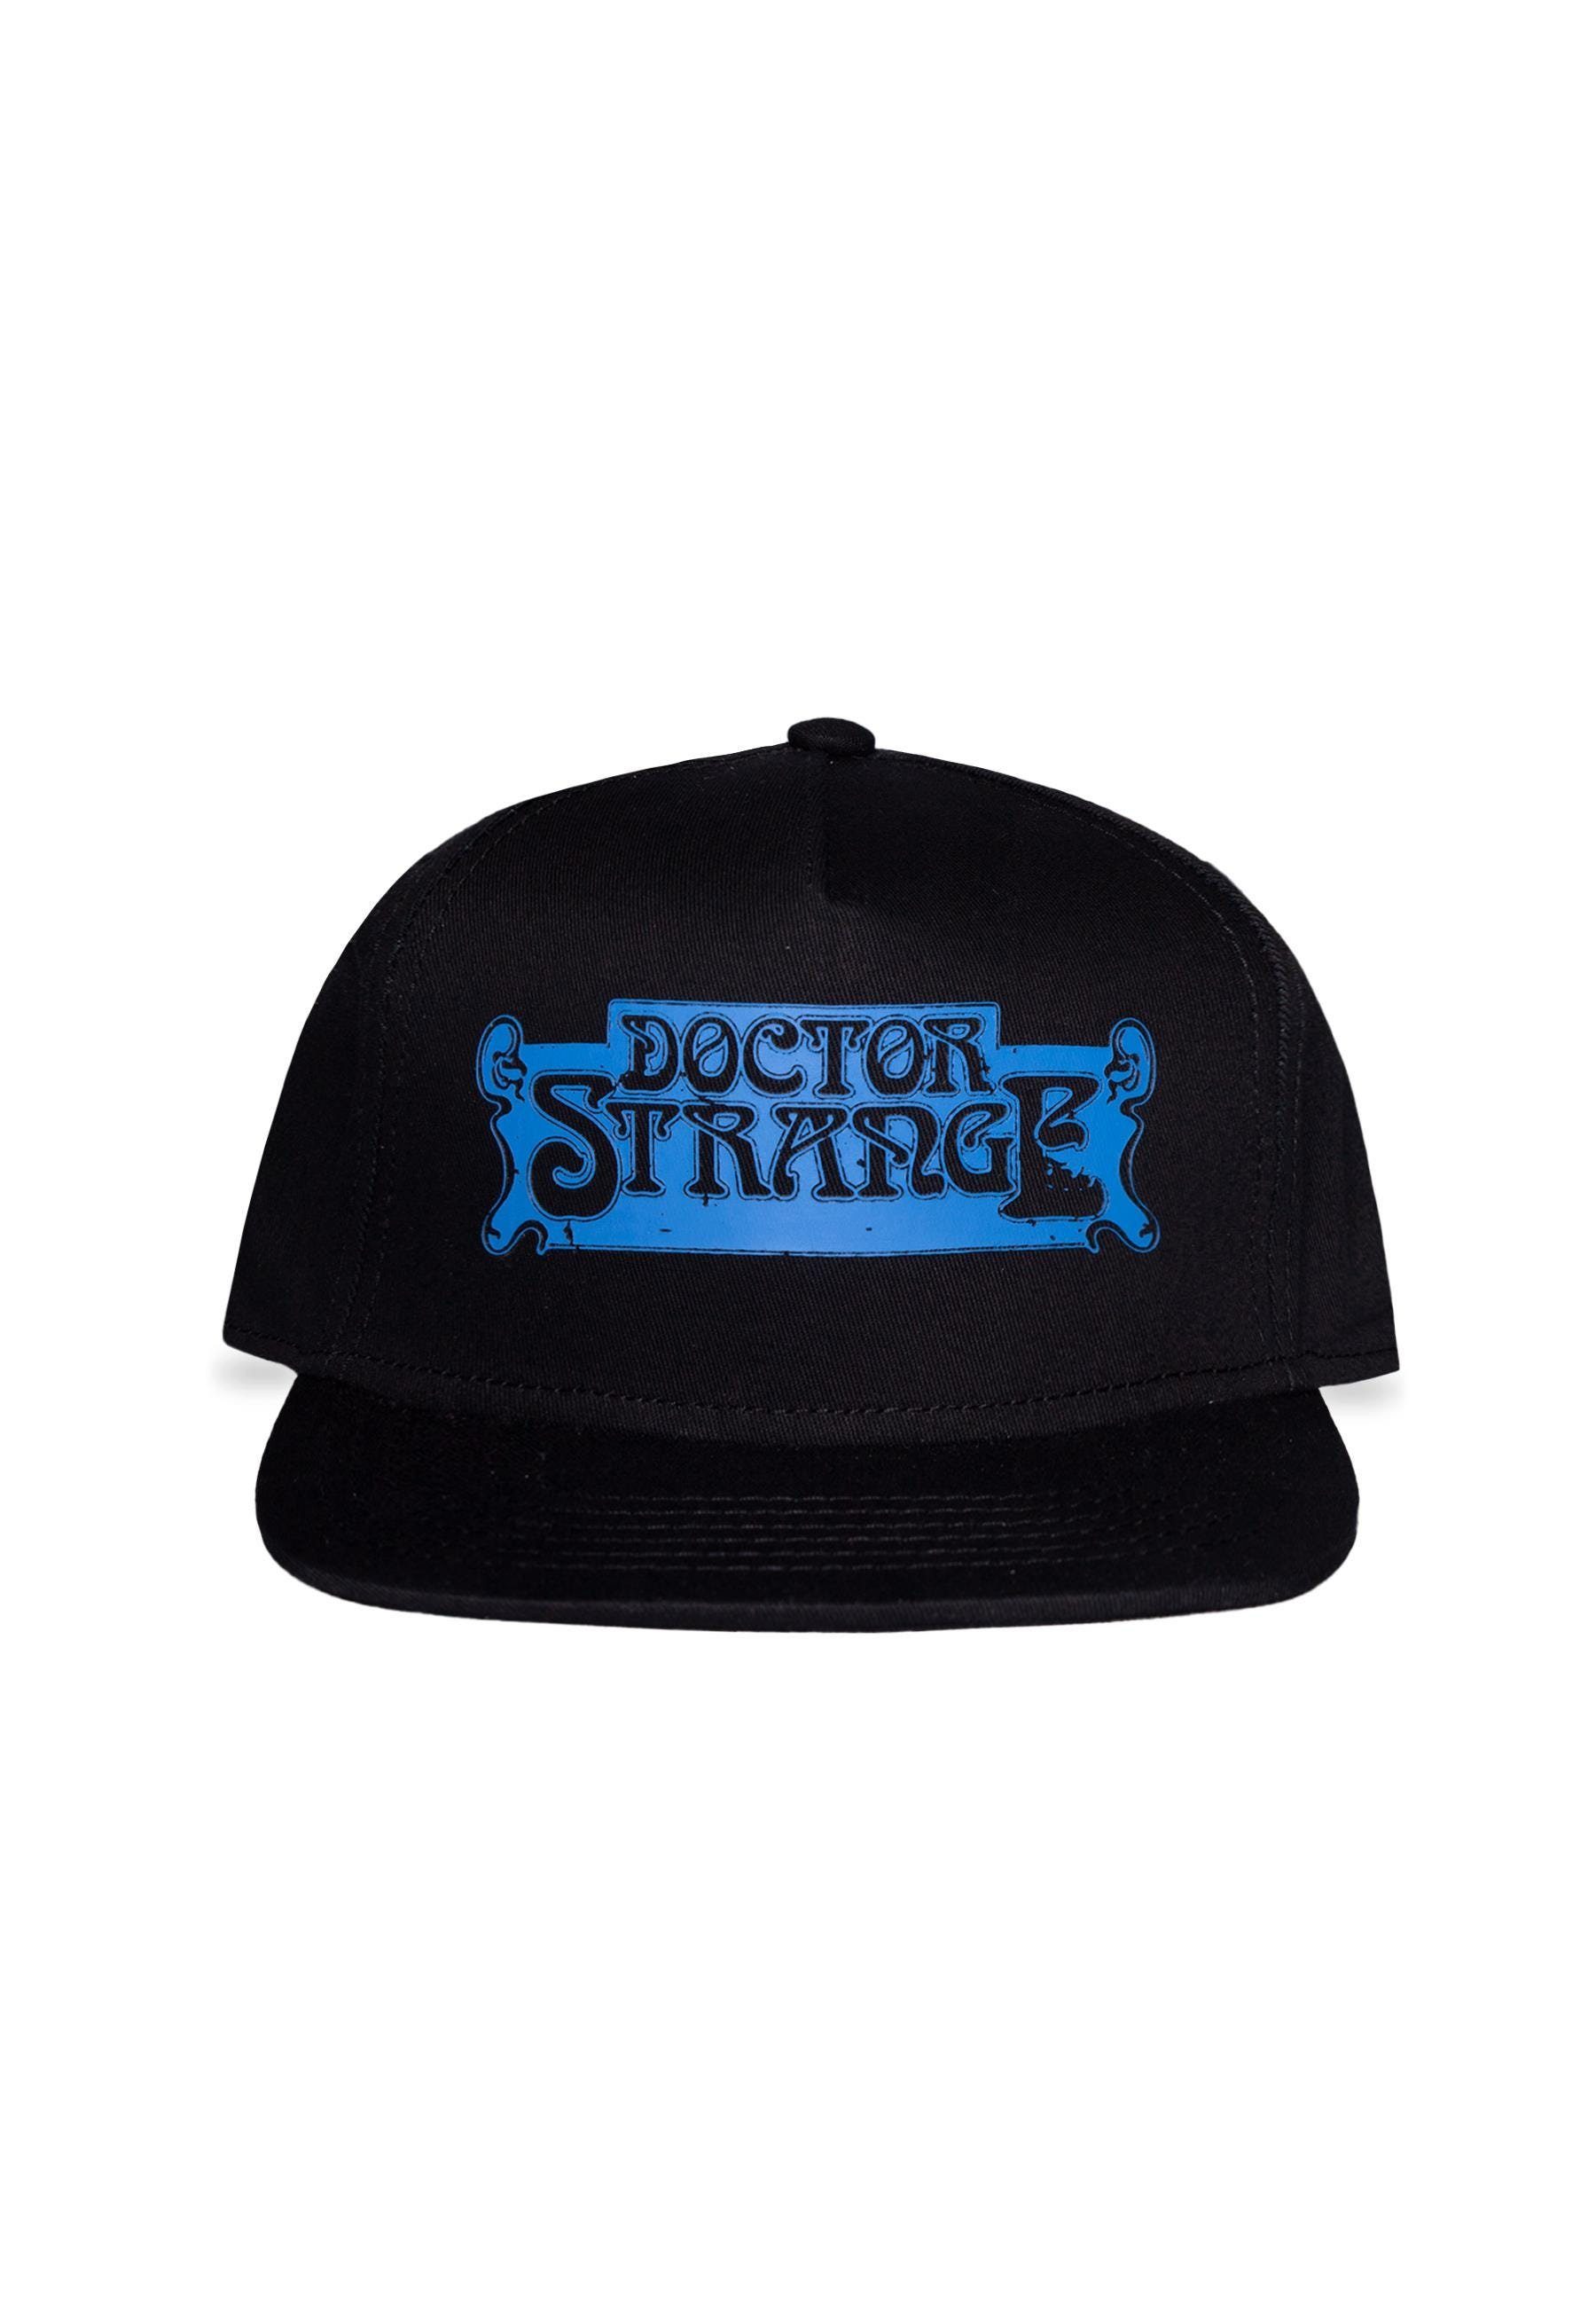 Doctor Strange Snapback Cap